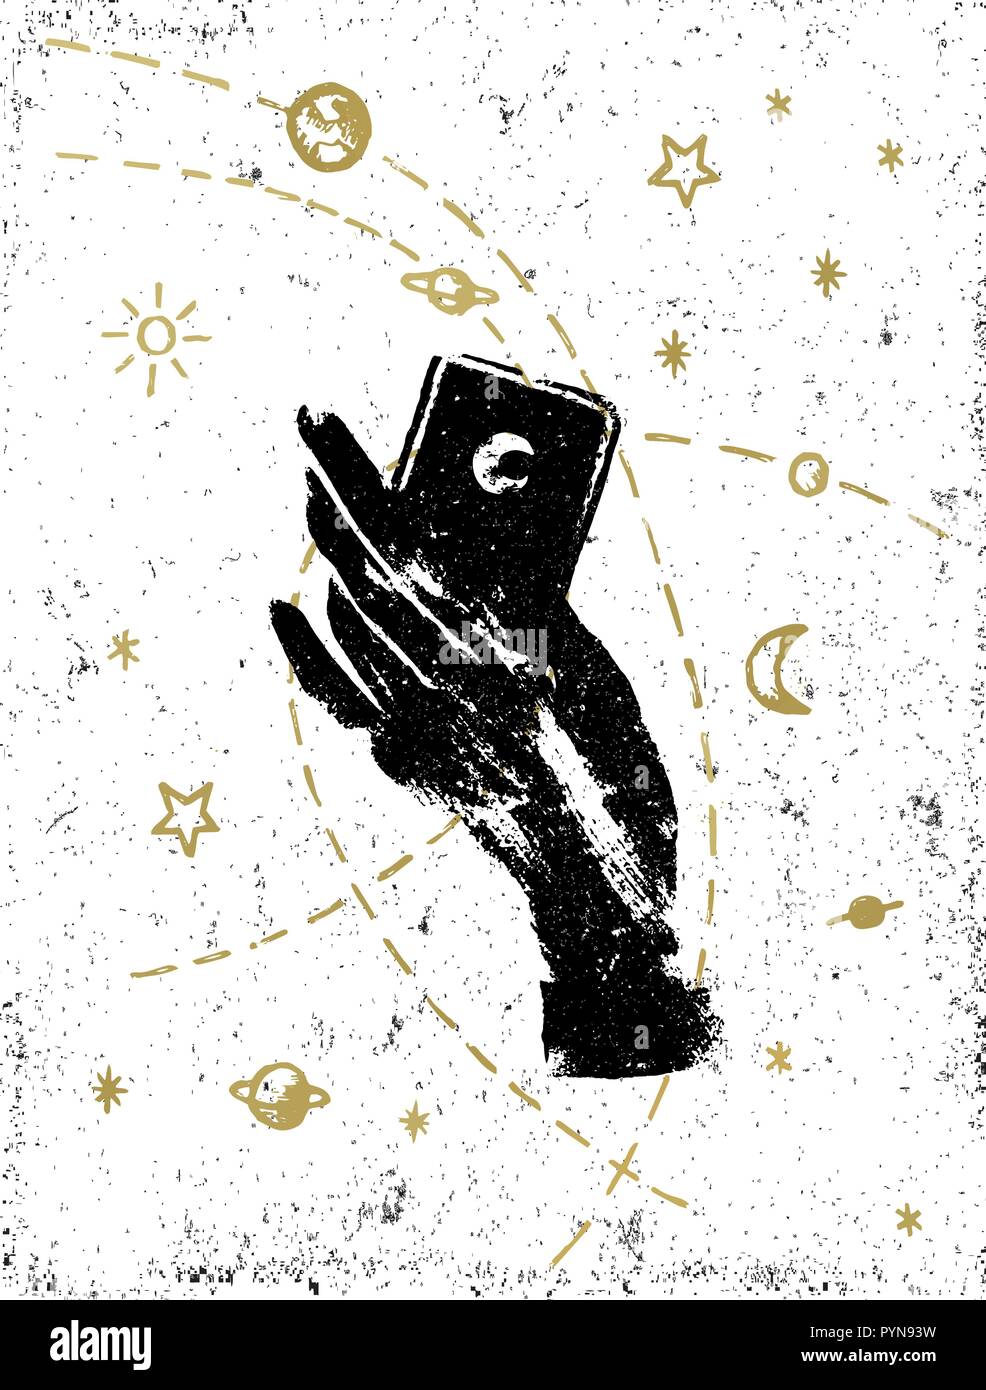 Der schwarzen Hexe hand mit symbolischen Kosmos Abbildung auf weiße strukturierte Hintergrund. Tattoo, Aufkleber, Patch oder Poster print Design. Stock Vektor